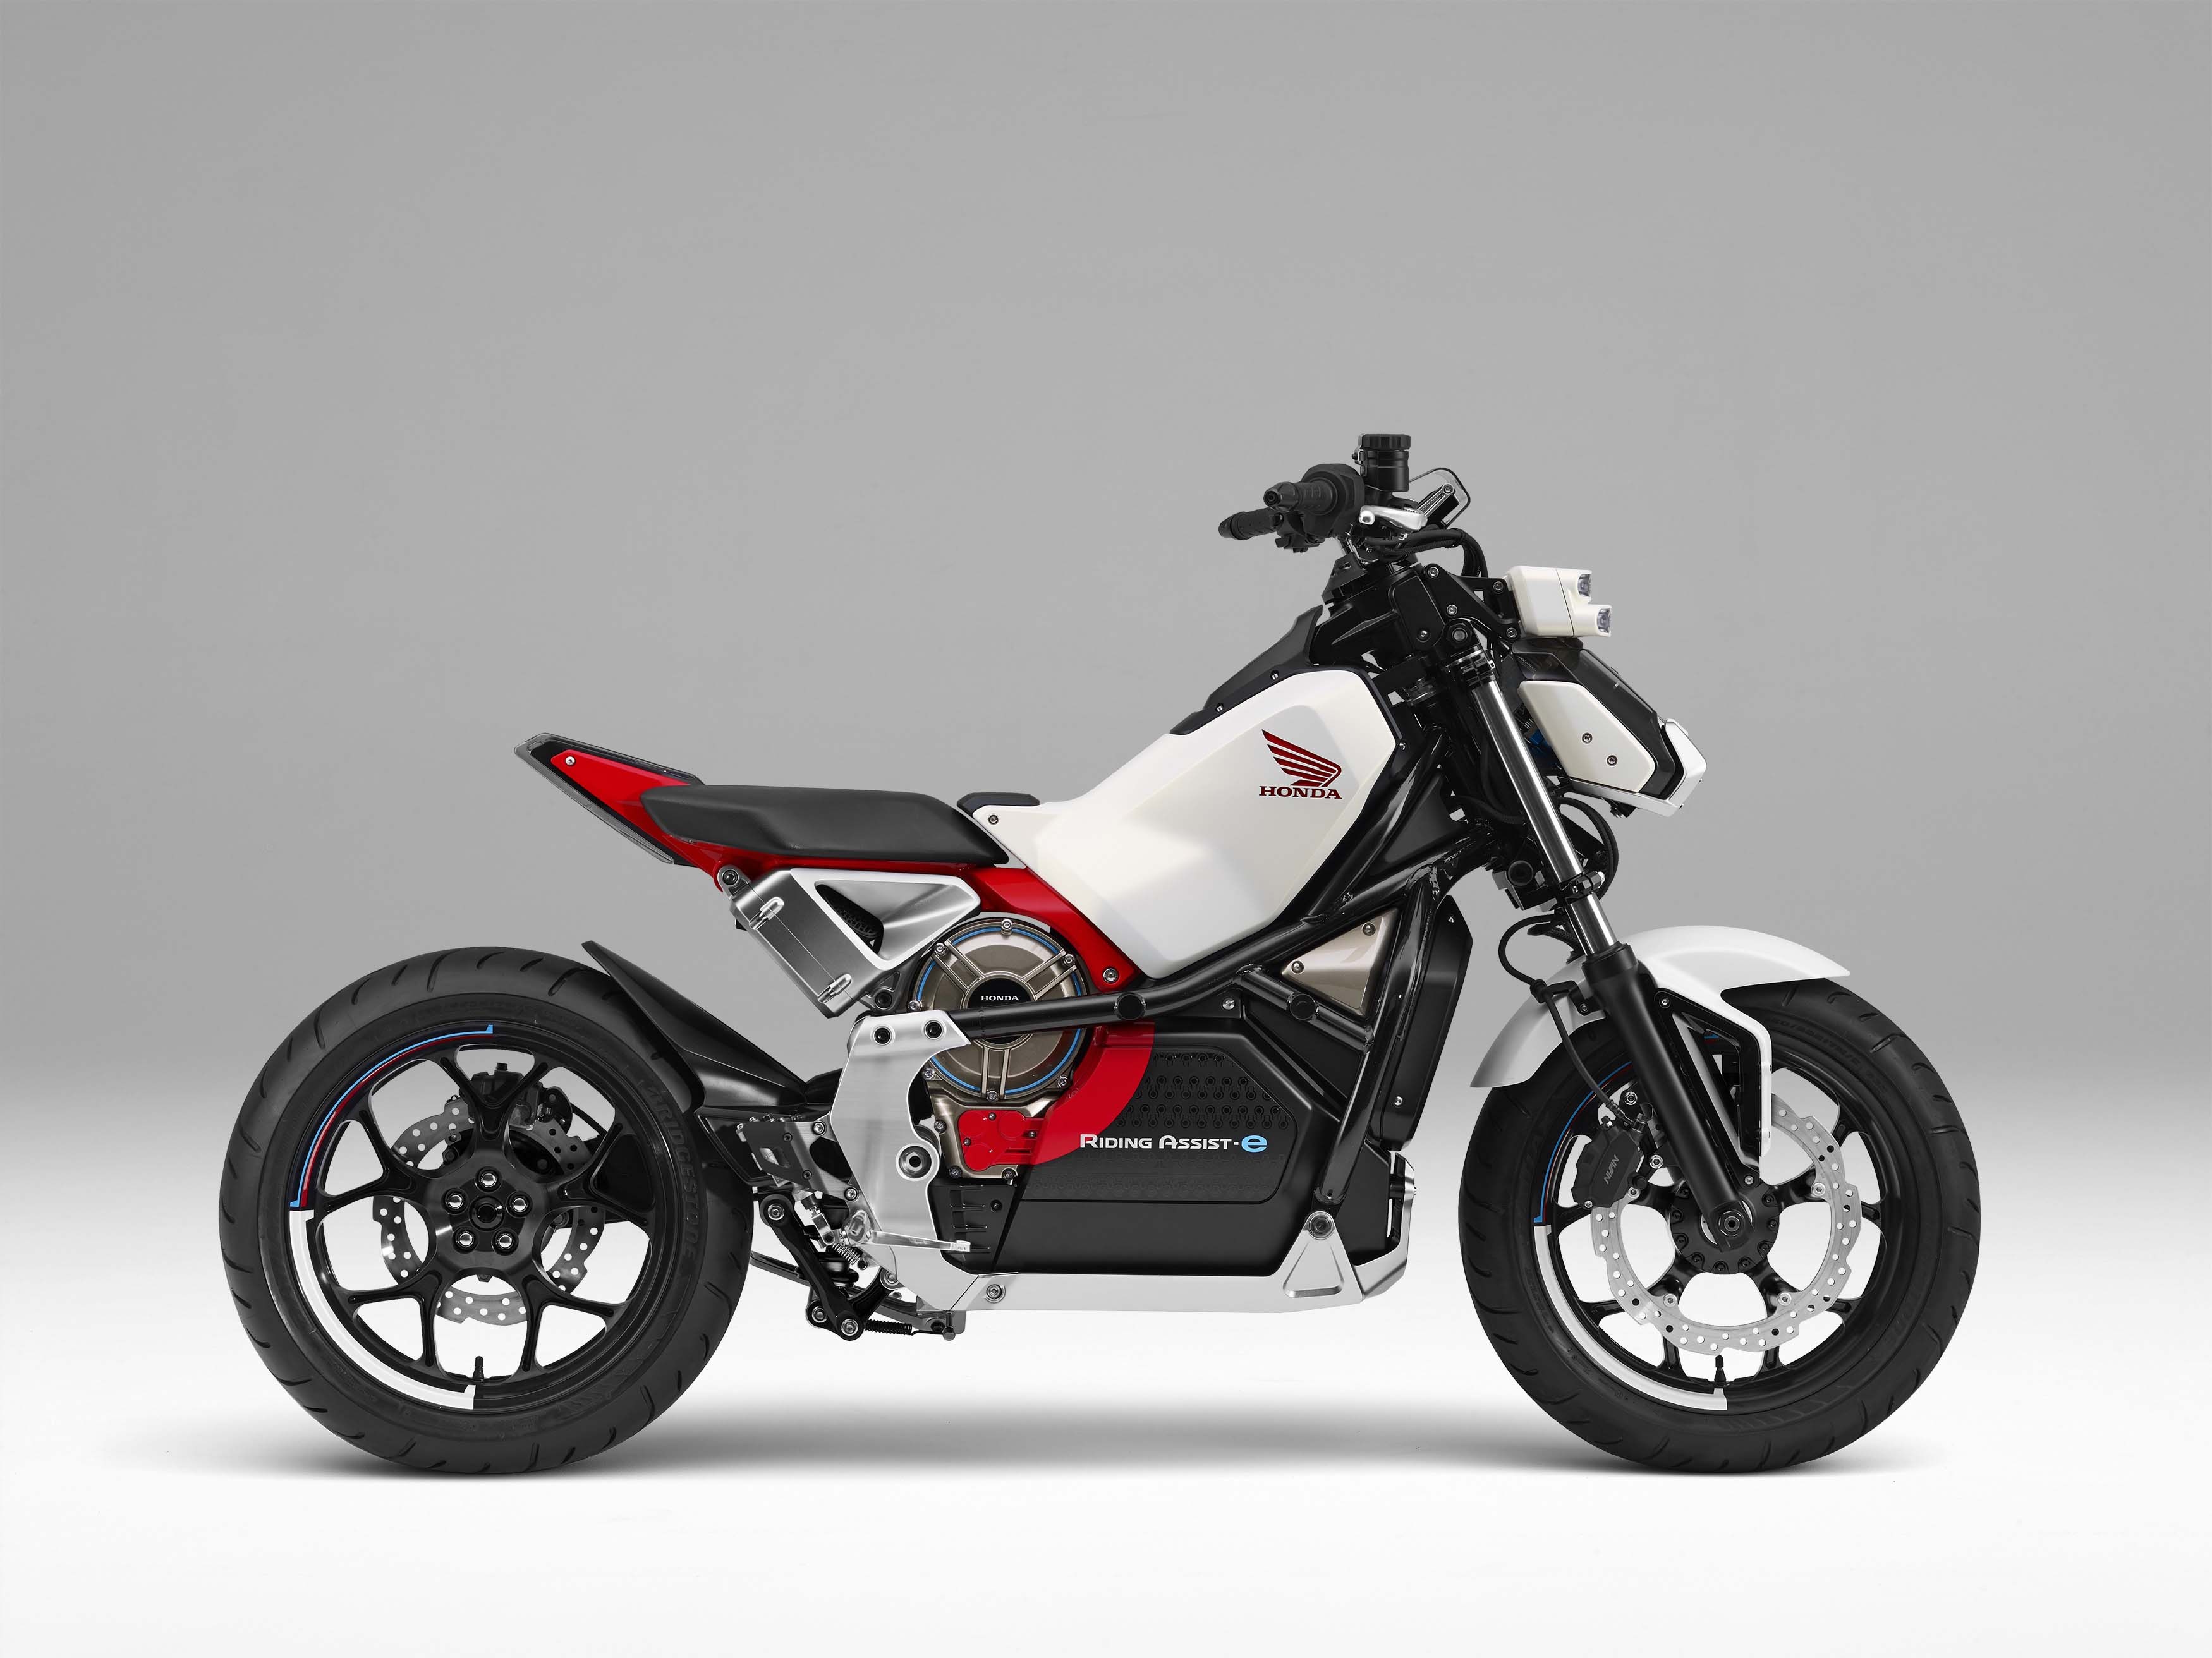 Tinhtevn  Xe môtô Honda tự lái và cân bằng tự động  CES 2017  YouTube